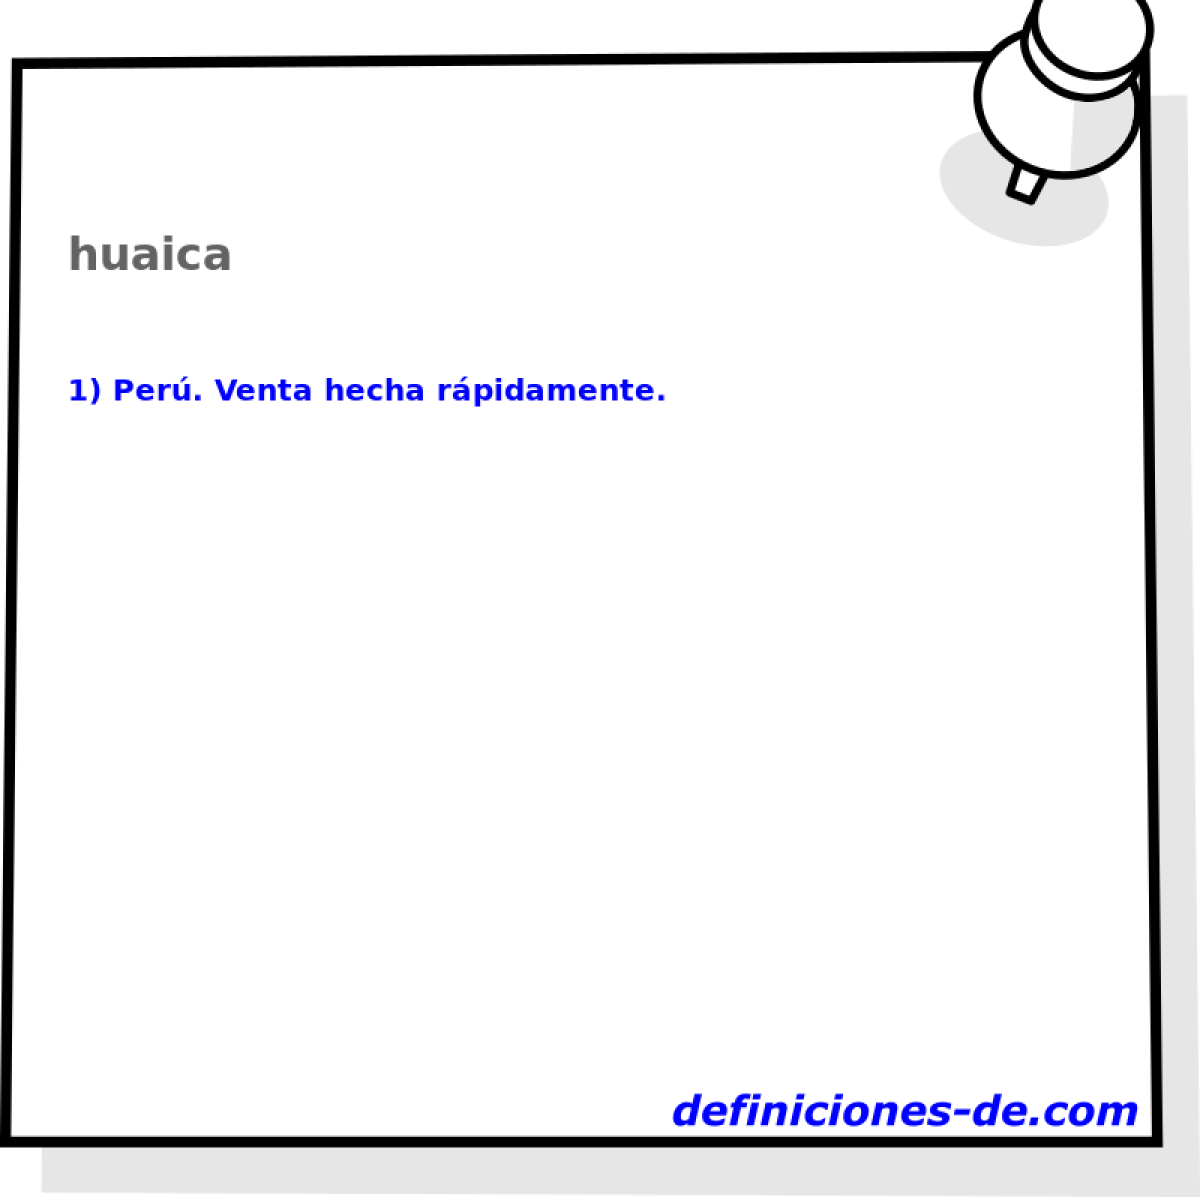 huaica 